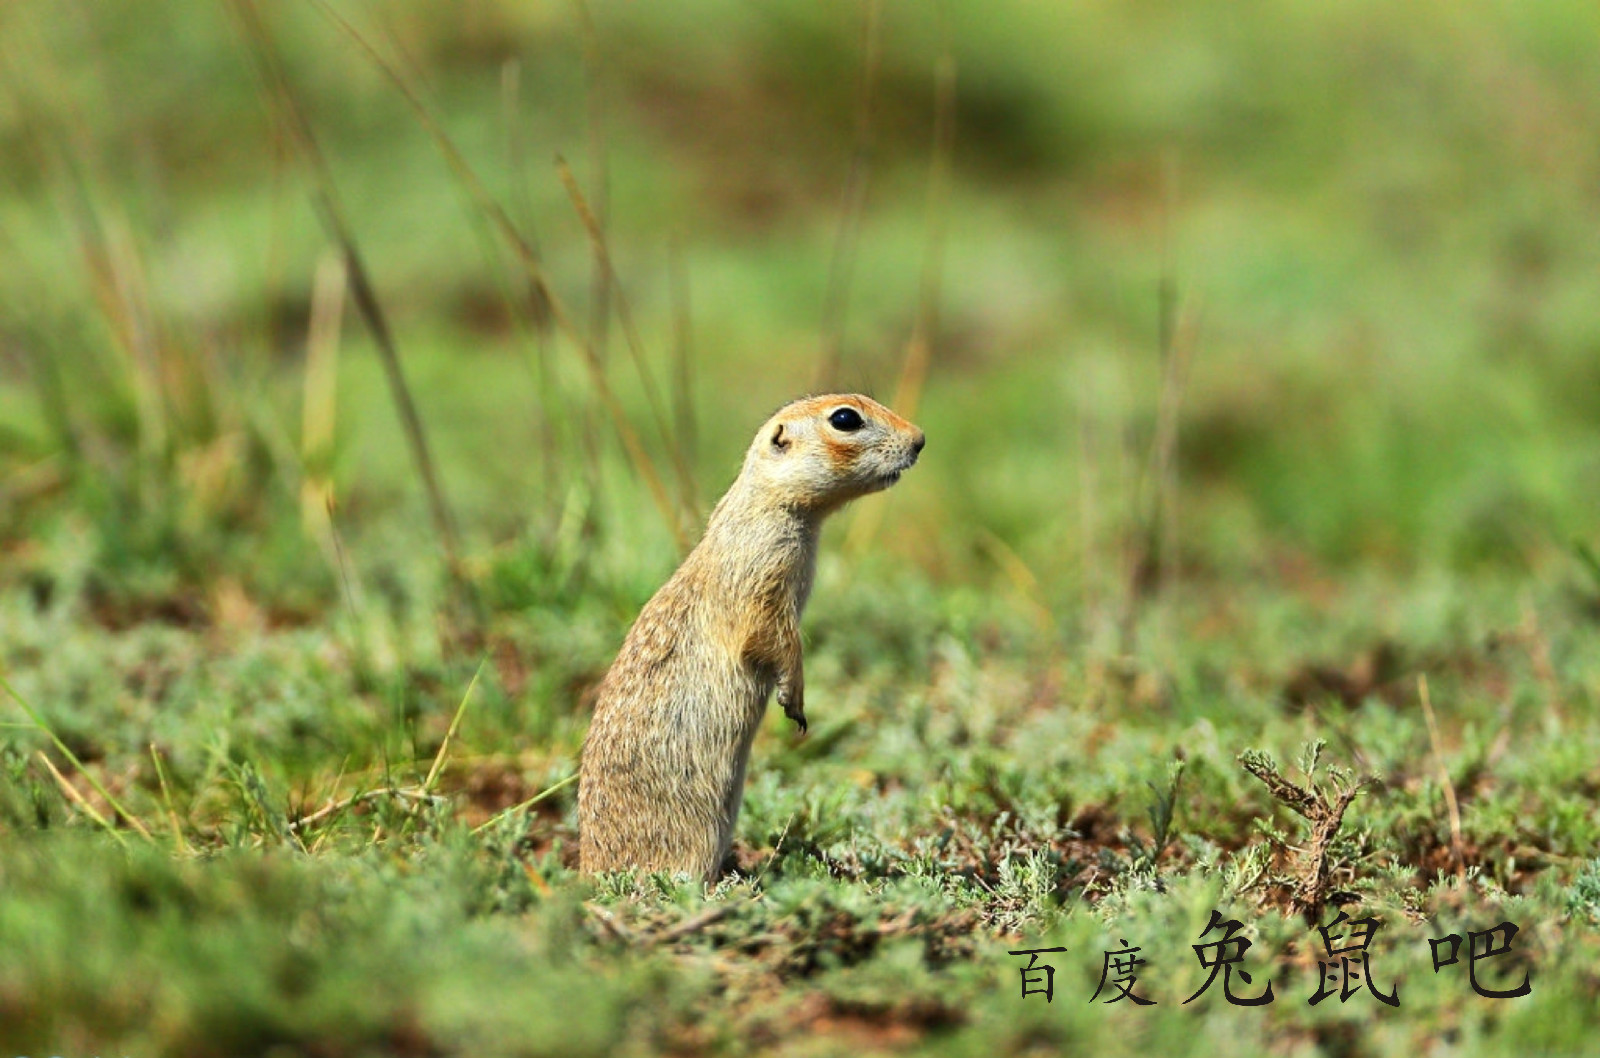 中国图库-动物-小仓鼠